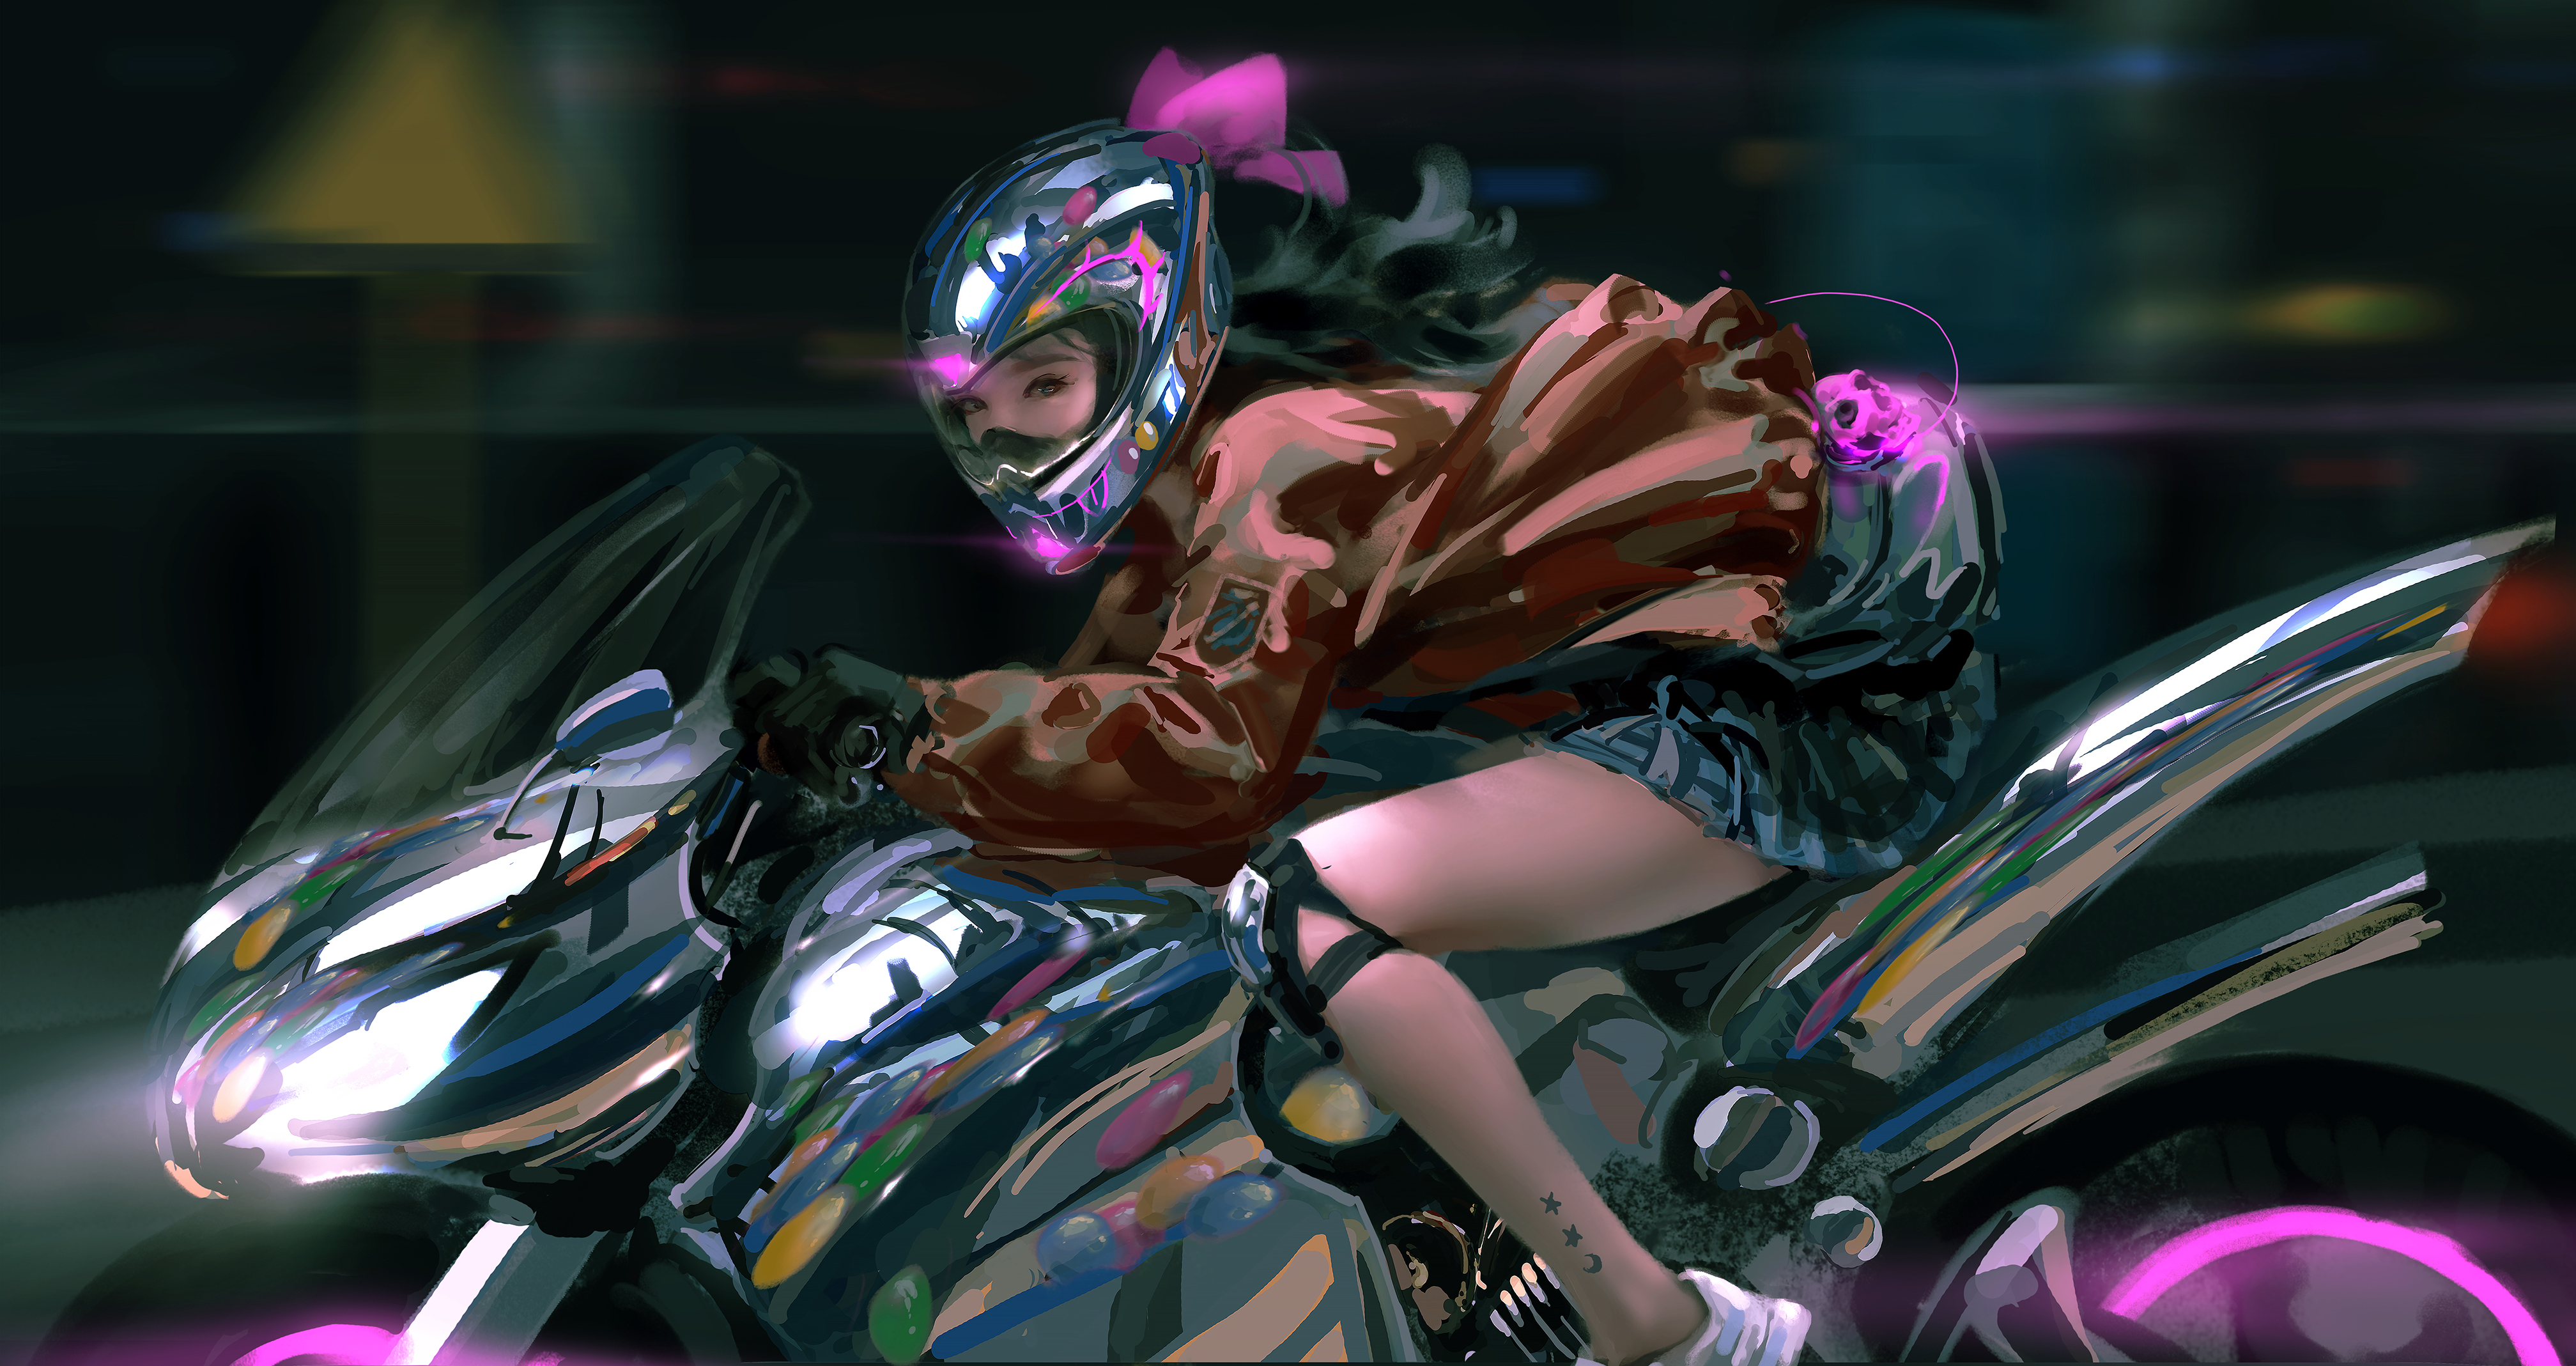 WLOP Digital Art Artwork Illustration Women Motorcycle Motorbike Helmet Skirt Long Hair Dark Hair Lo 4031x2137